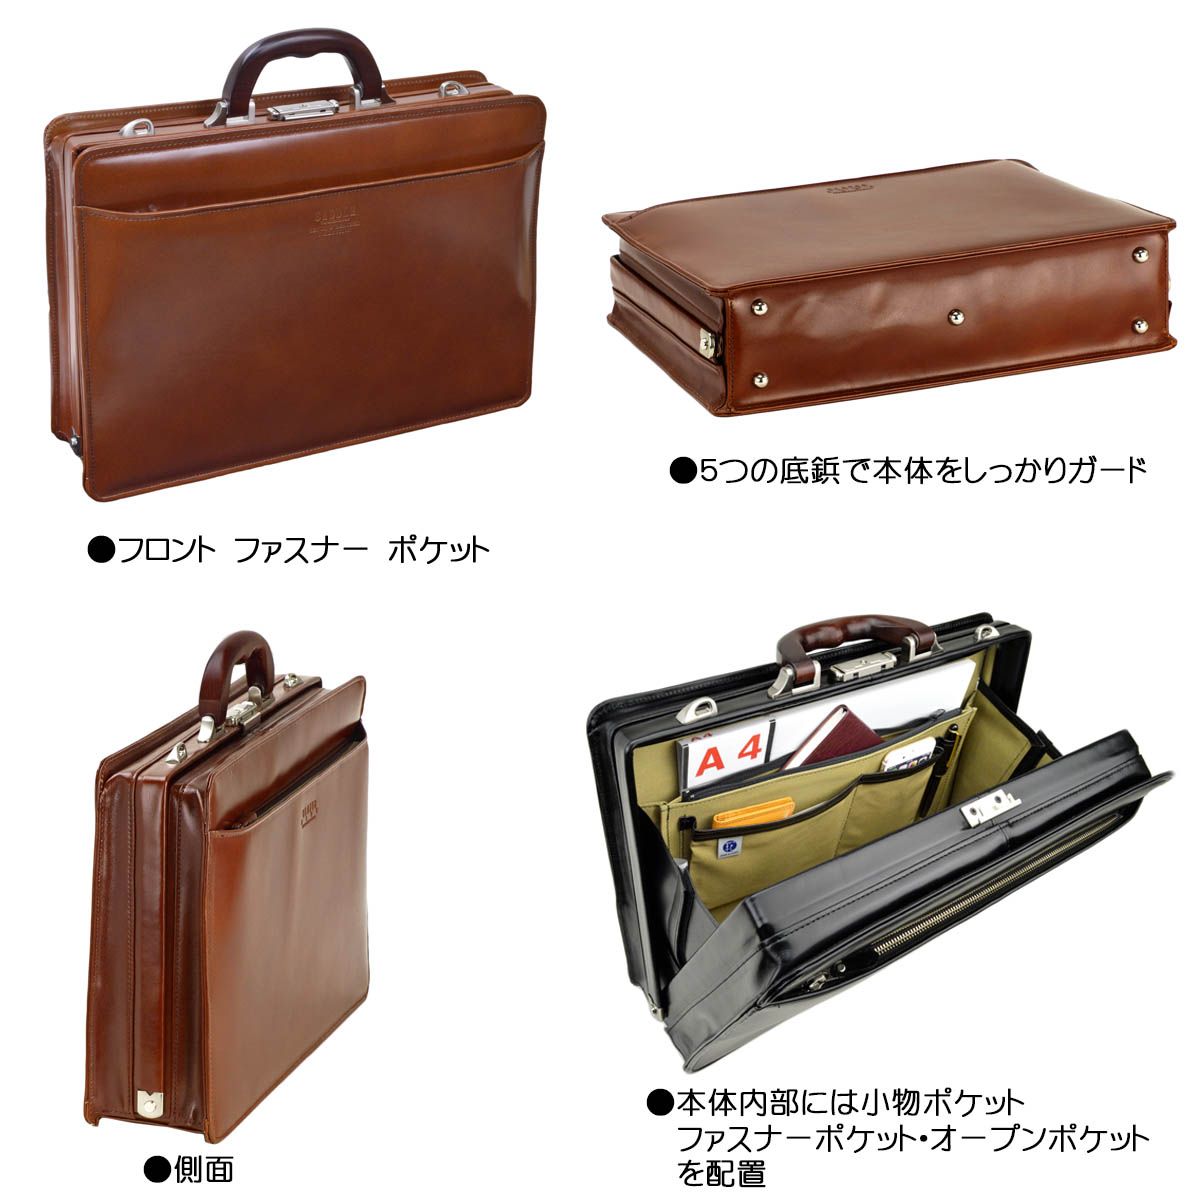 【メーカーで】 牛革 ダレスバッグ 日本製 本革 ビジネスバッグ 22303 A4 豊岡製鞄 の スタッフも - dispensaries